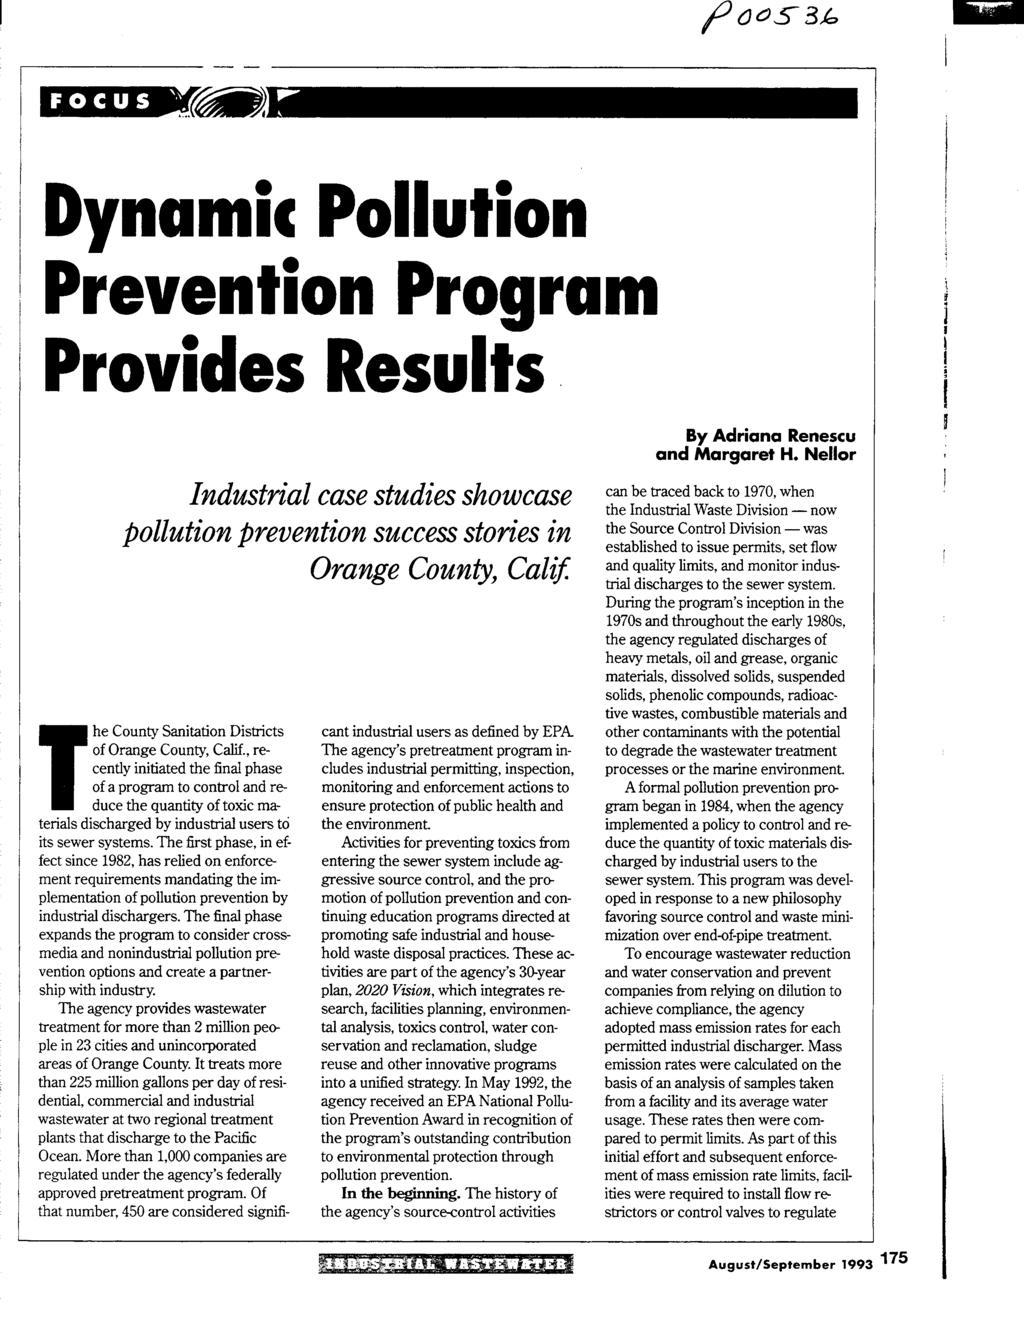 Dynamic Pollution Prevention Proaram r.